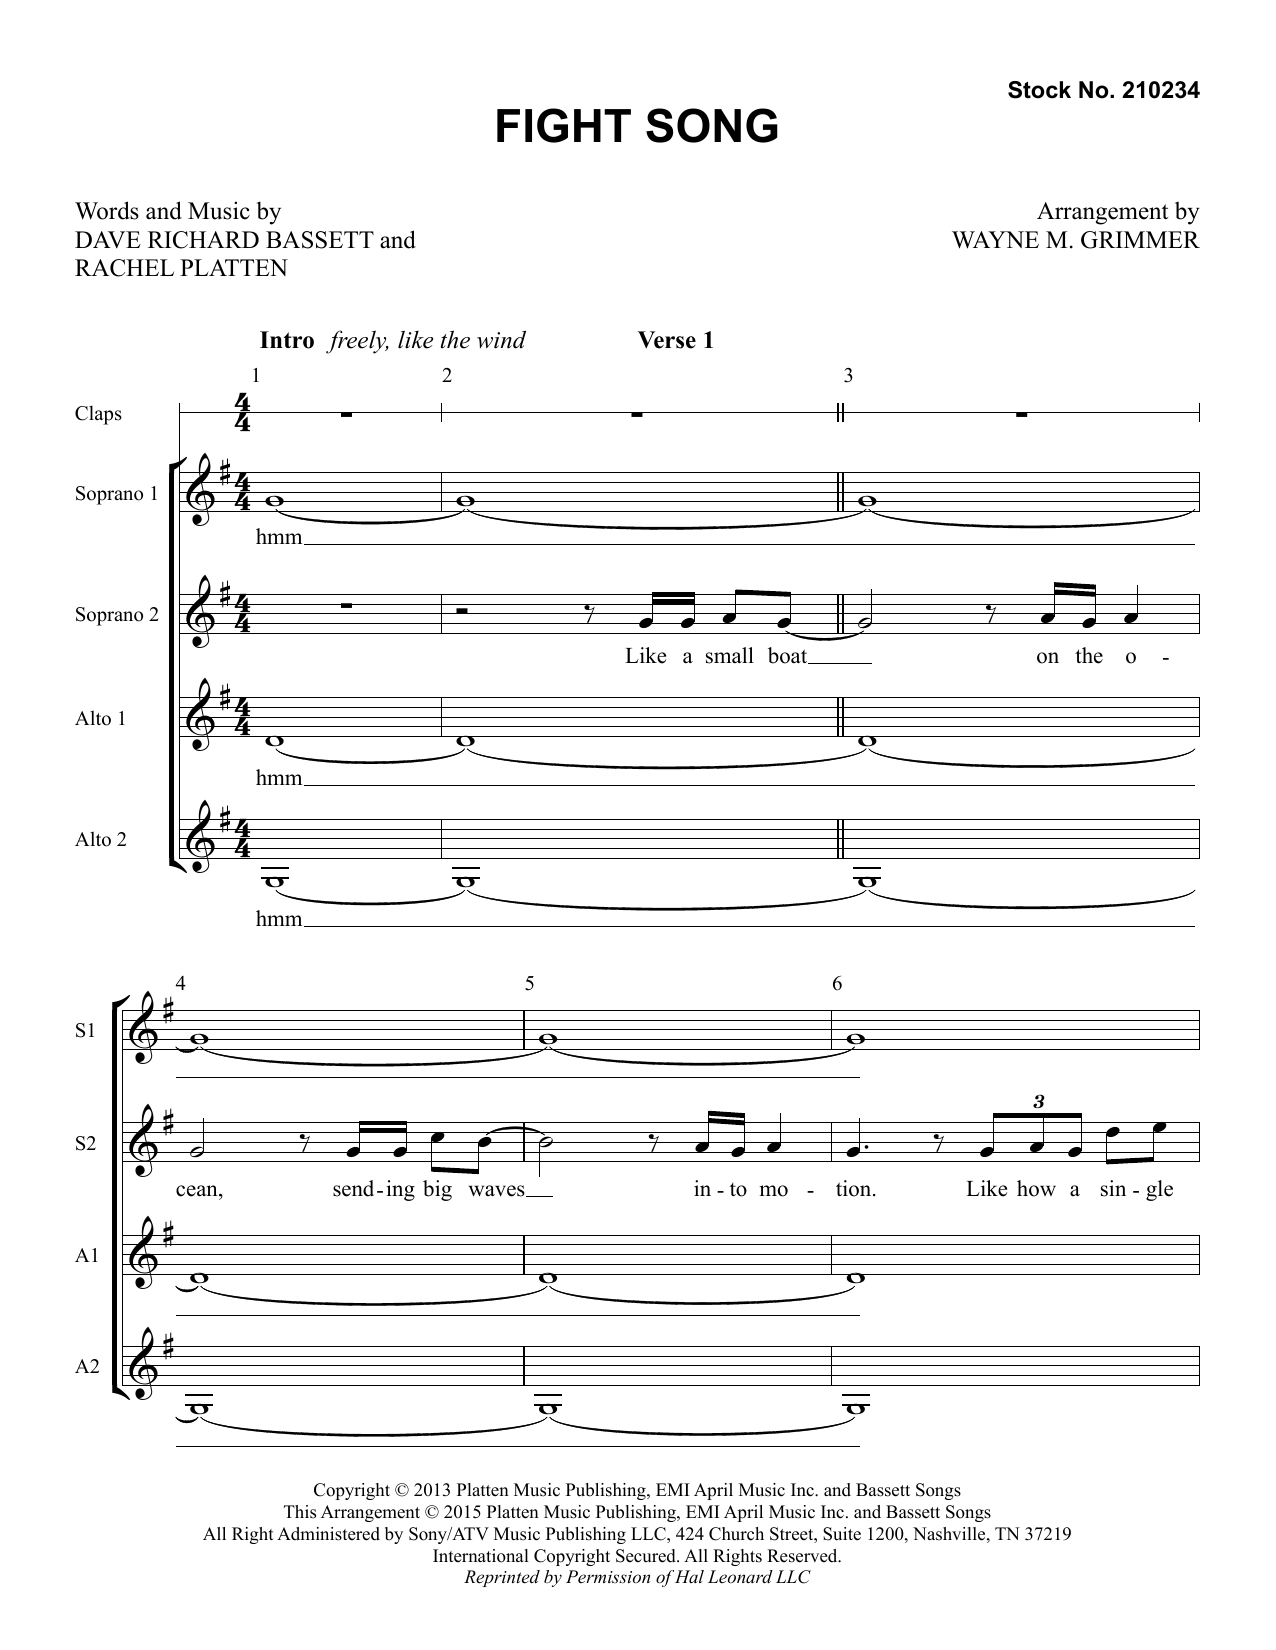 Rachel Platten Fight Song (arr. Wayne Grimmer) Sheet Music Notes & Chords for TTBB Choir - Download or Print PDF